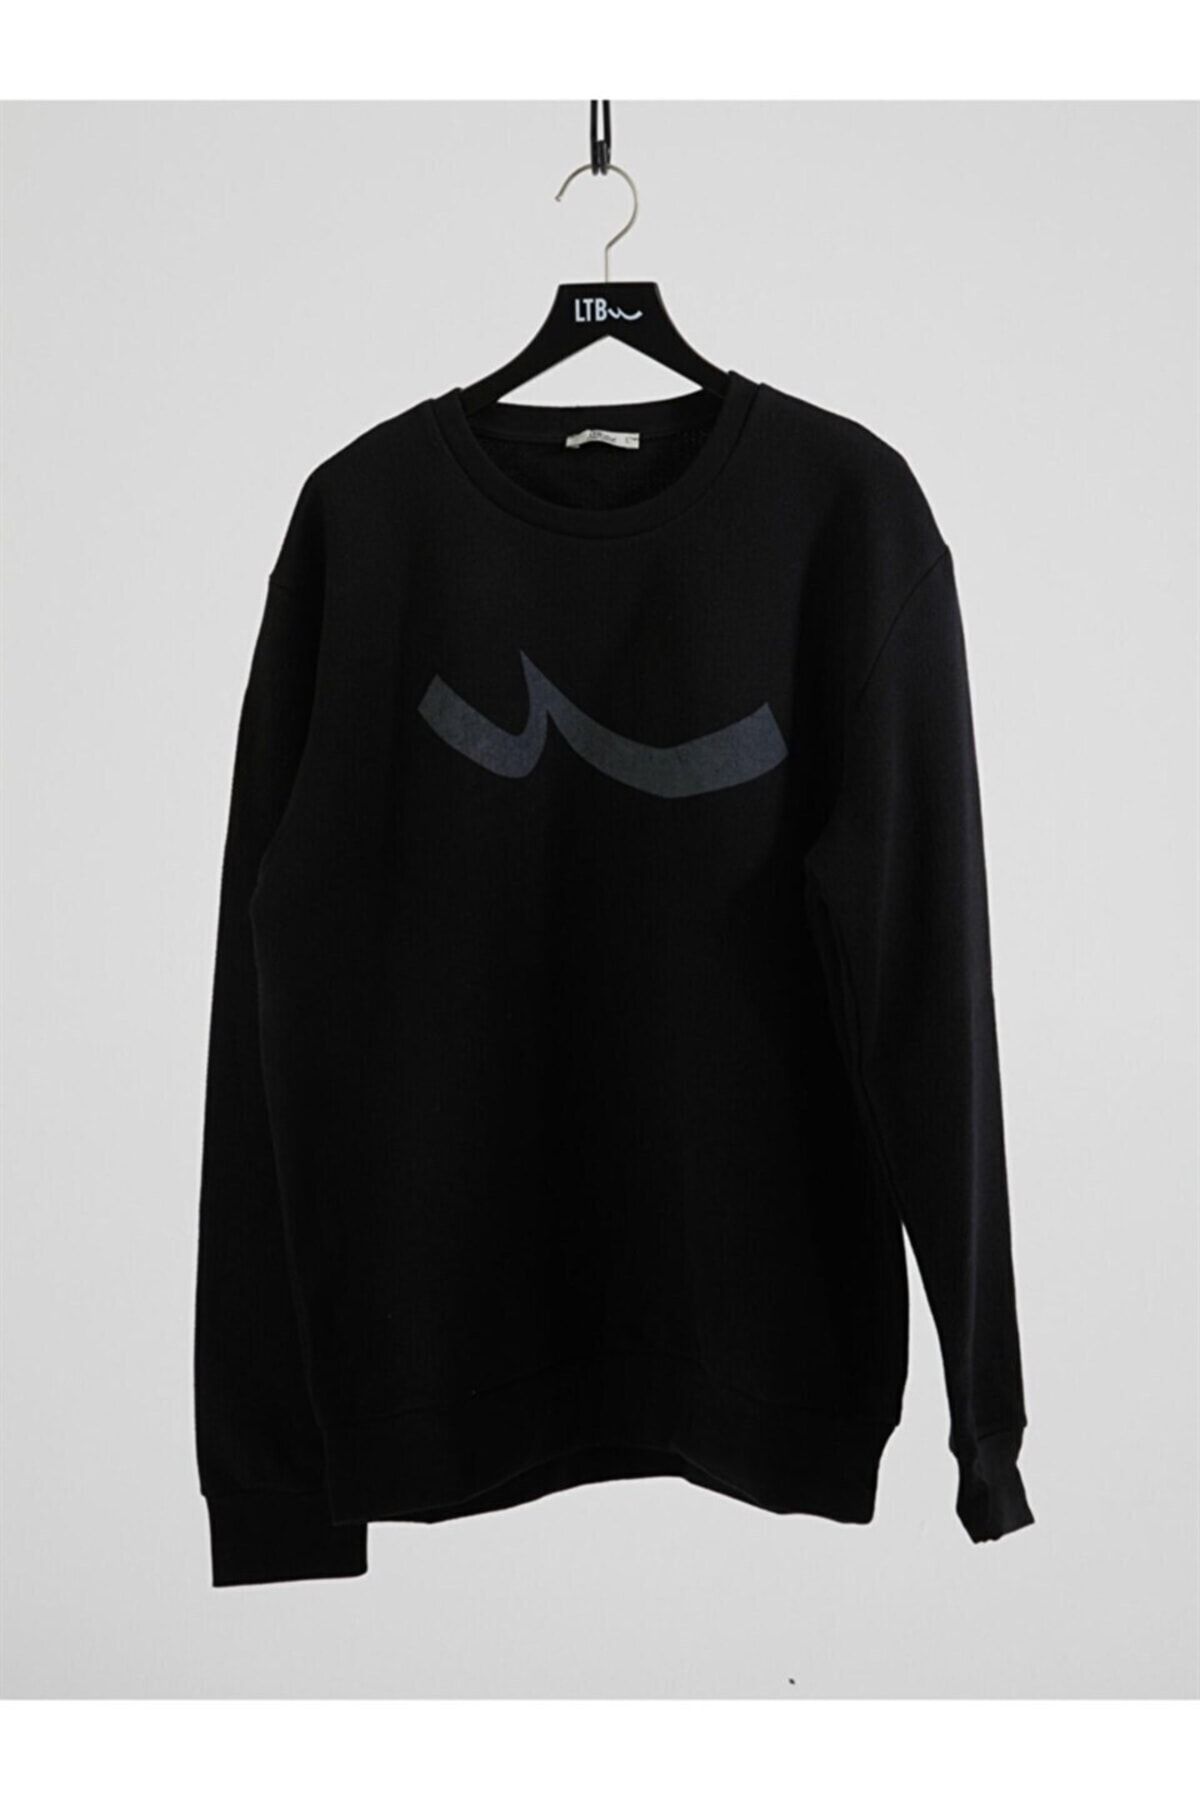 Louis Vuitton Sweatshirt Modelleri, Fiyatları - Trendyol - Sayfa 91